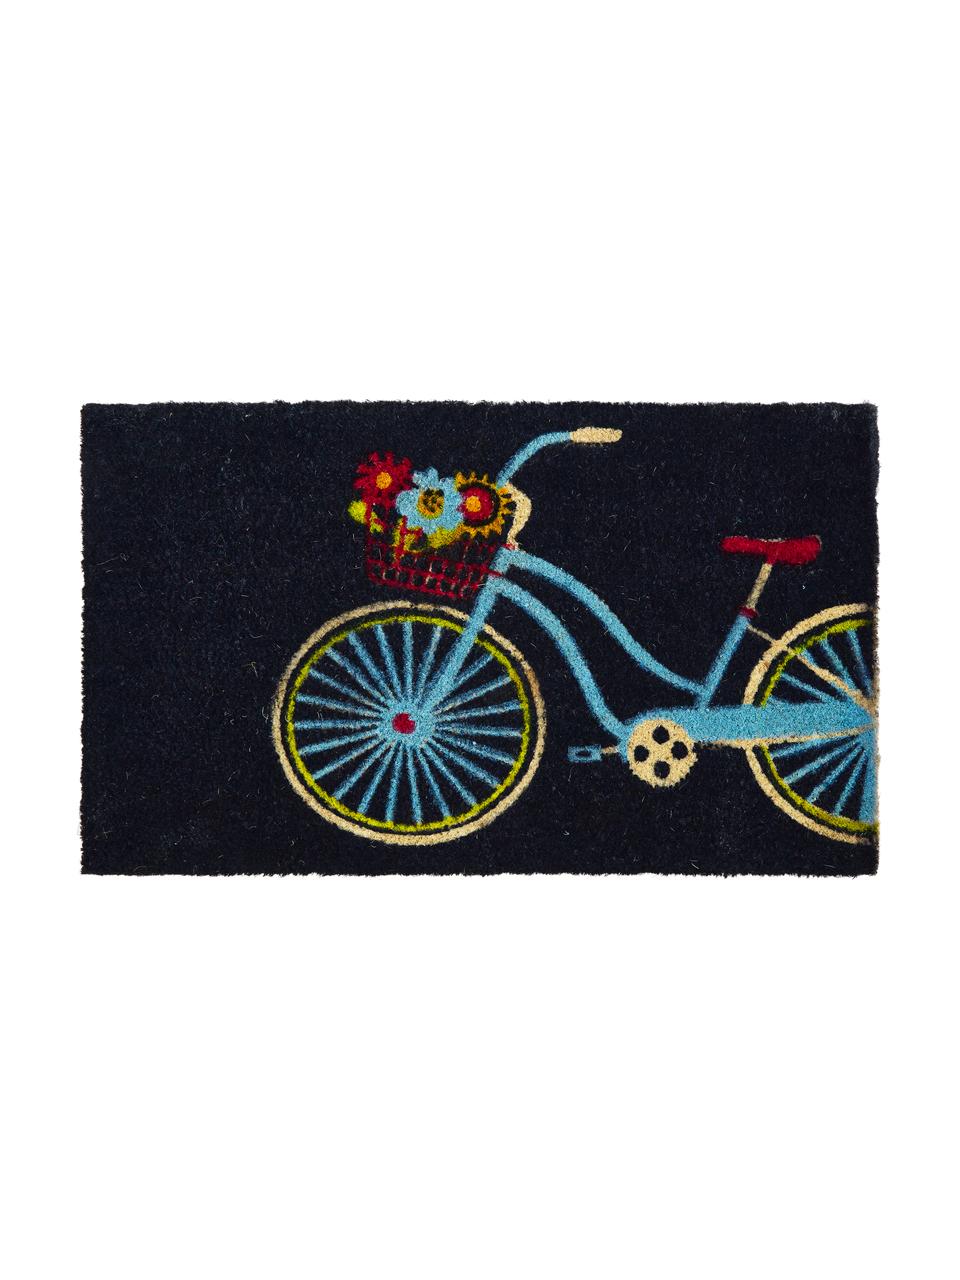 Paillasson Bicycle, Noir, multicolore